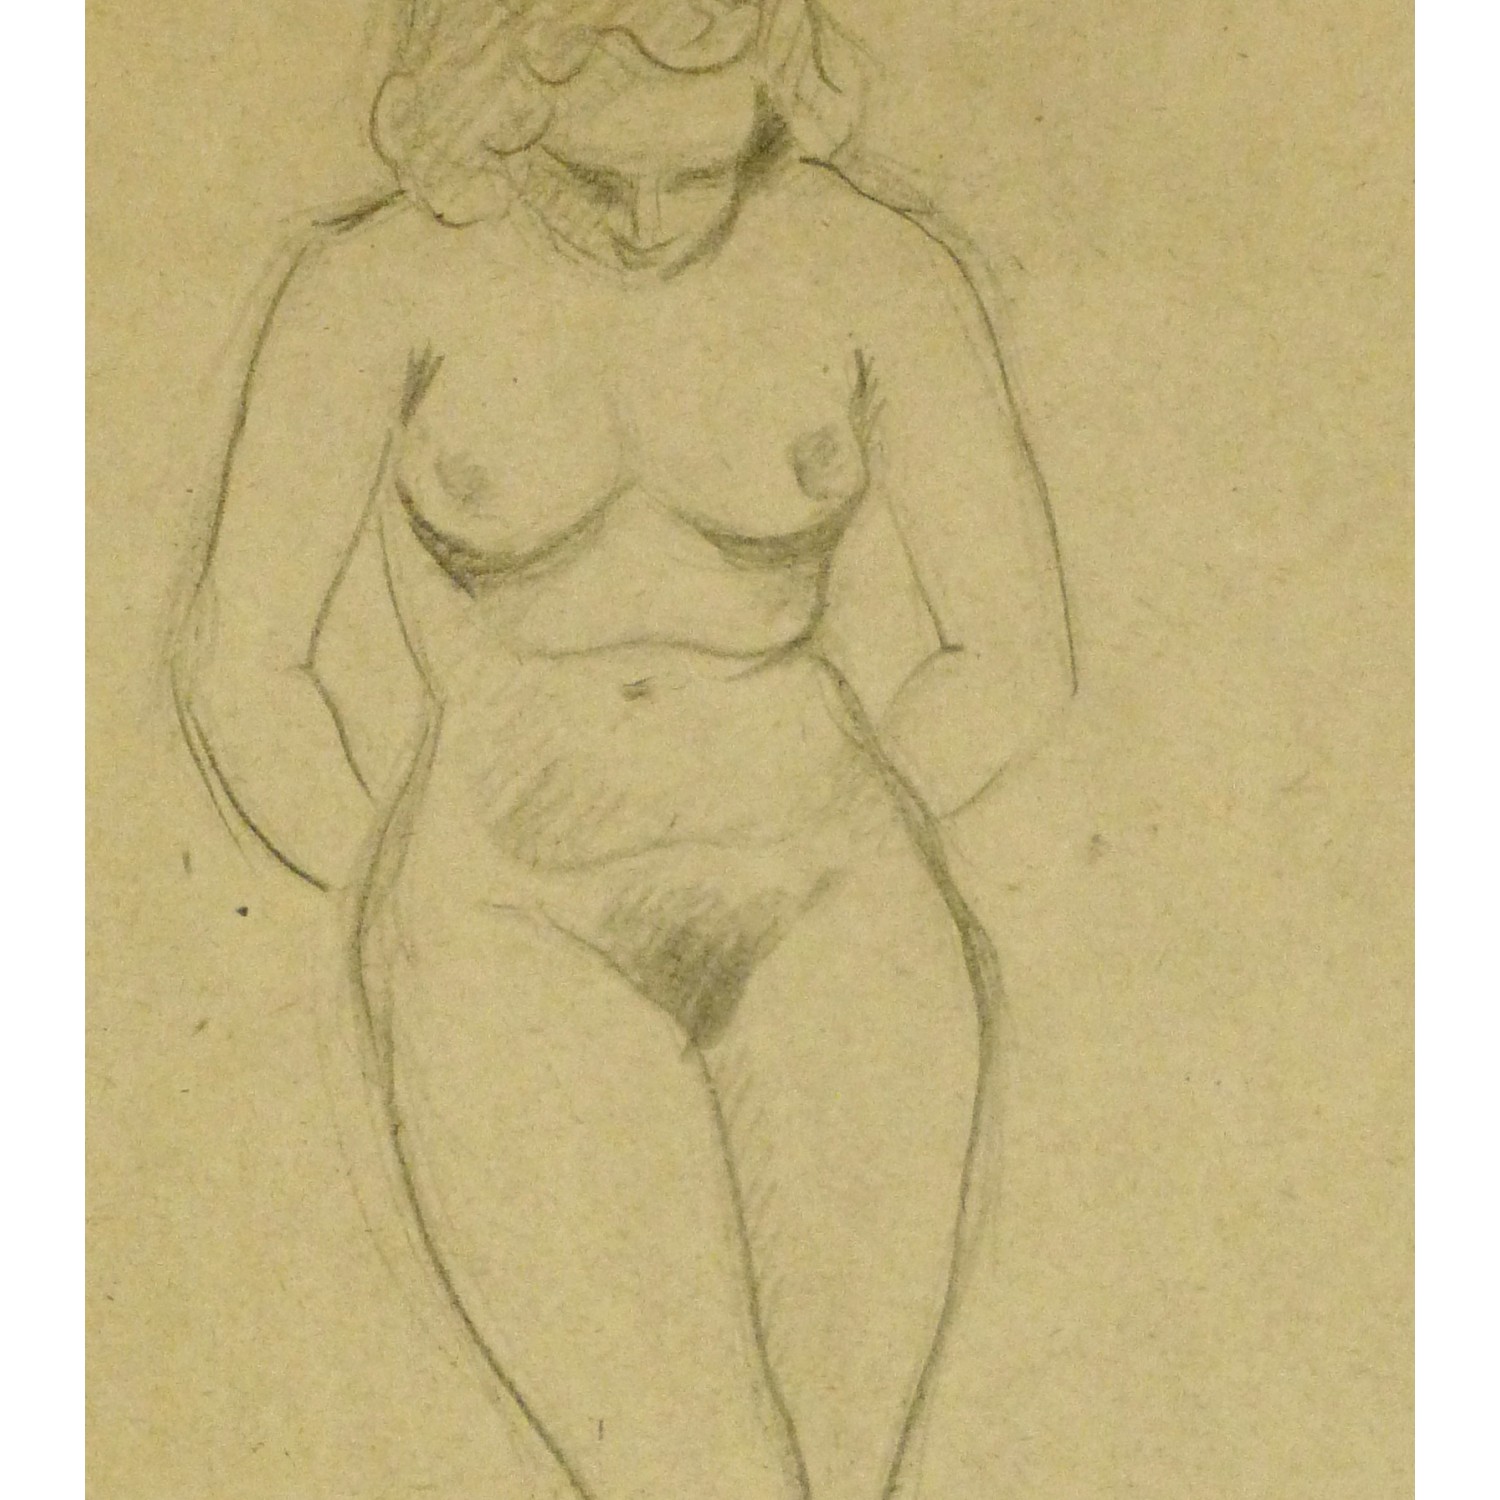 Erotic Nude Drawing 95